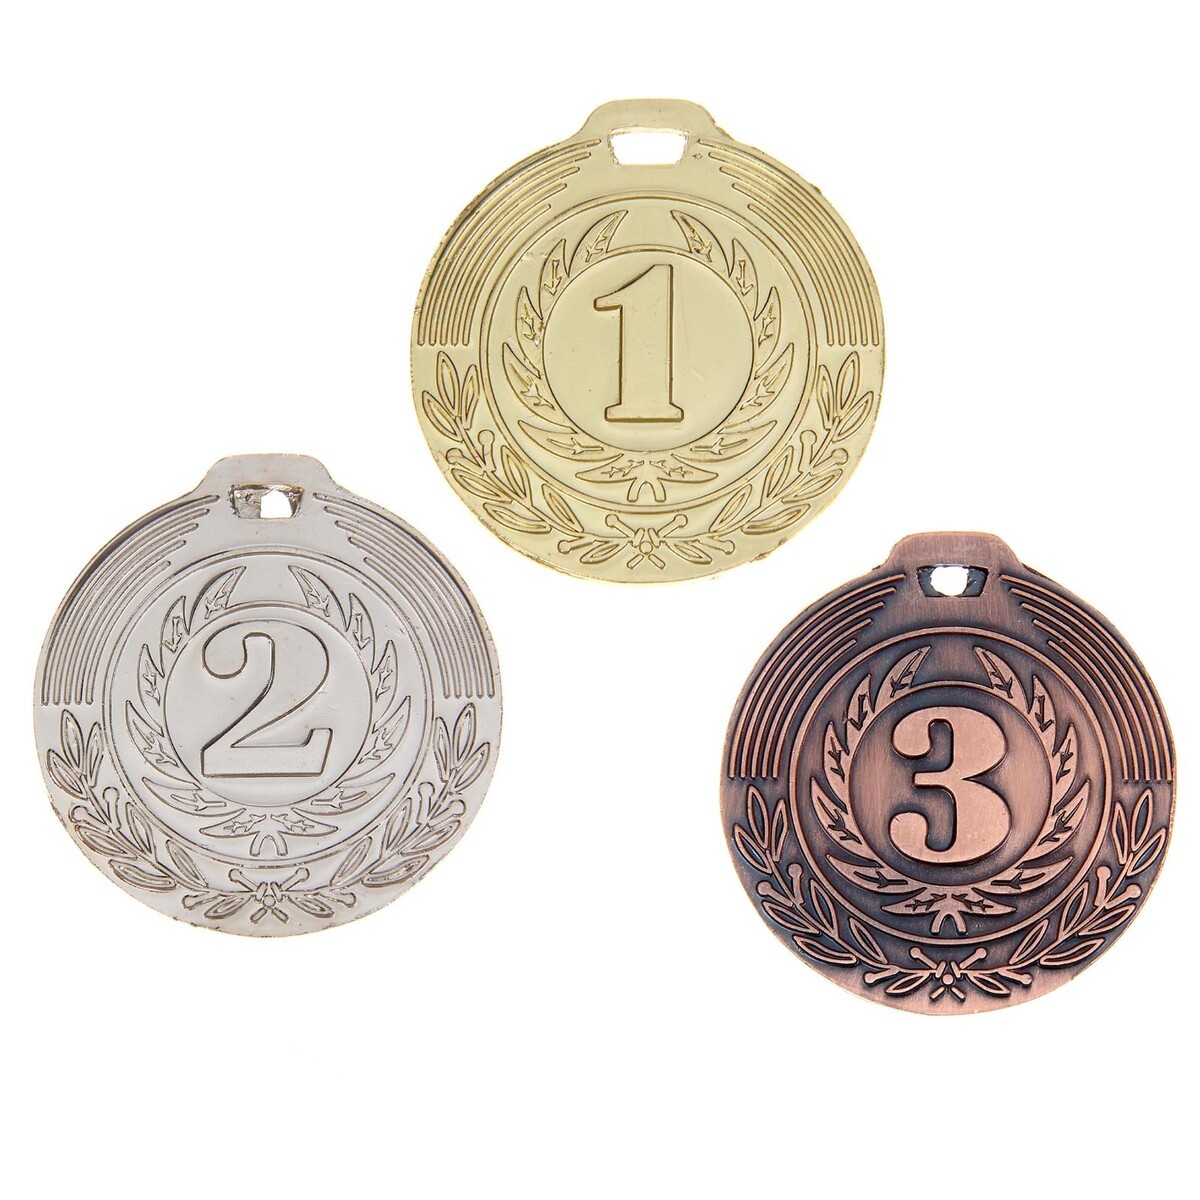 Медаль призовая 021 диам 4 см. 3 место. цвет бронз. без ленты медаль призовая 196 диам 5 см 3 место бронз без ленты